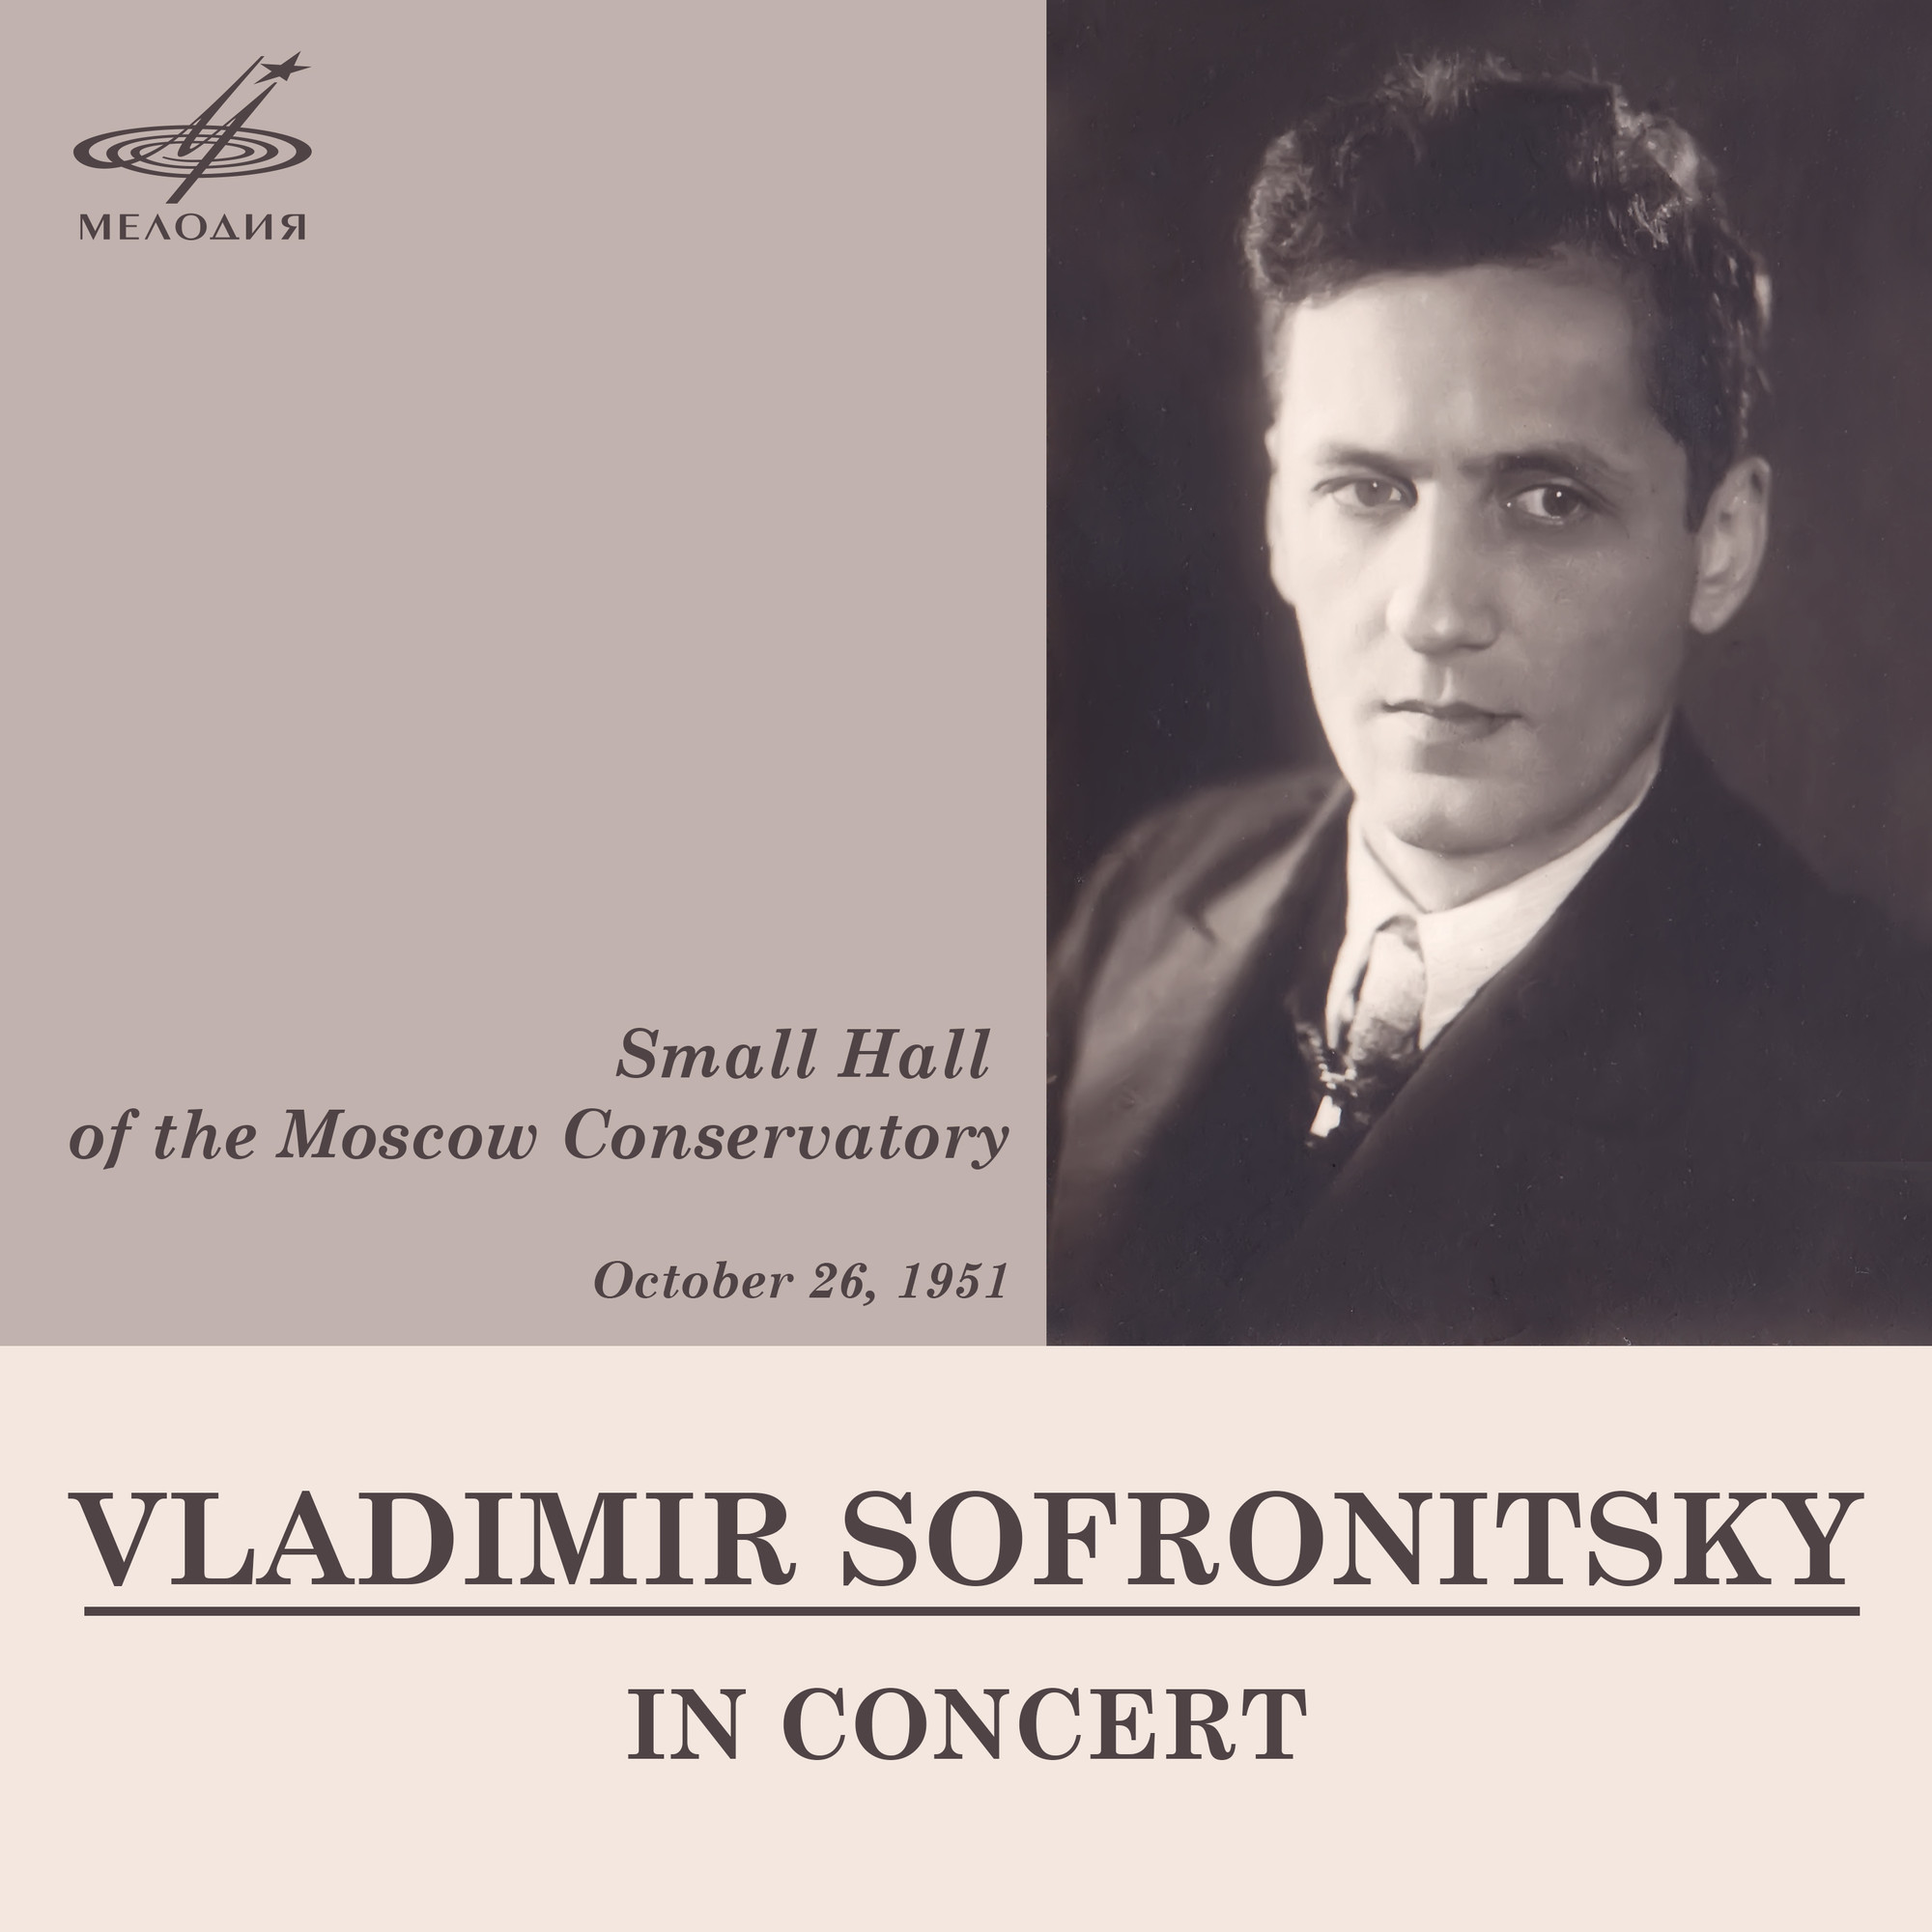 Концерт Владимира Софроницкого в Малом зале Московской консерватории 26 октября 1951 г. (Live)